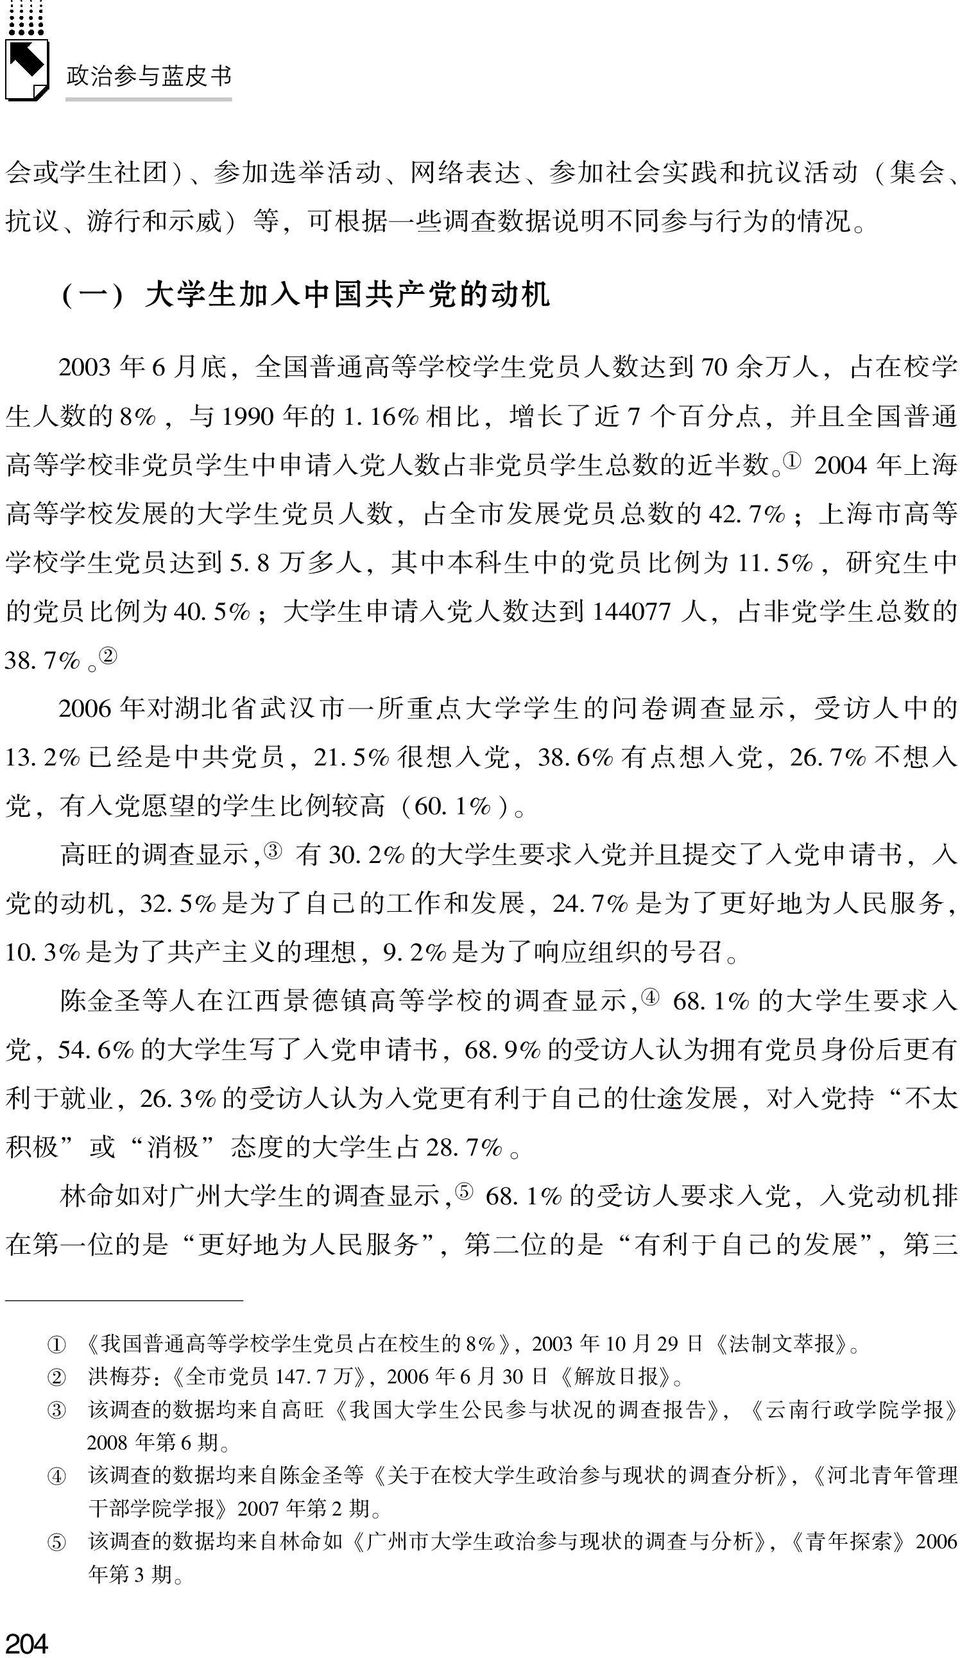 7% ; 上 海 市 高 等 学 校 学 生 党 员 达 到 5. 8 万 多 人, 其 中 本 科 生 中 的 党 员 比 例 为. 5%, 研 究 生 中 的 党 员 比 例 为 40. 5% ; 大 学 生 申 请 入 党 人 数 达 到 44077 人, 占 非 党 学 生 总 数 的 38.